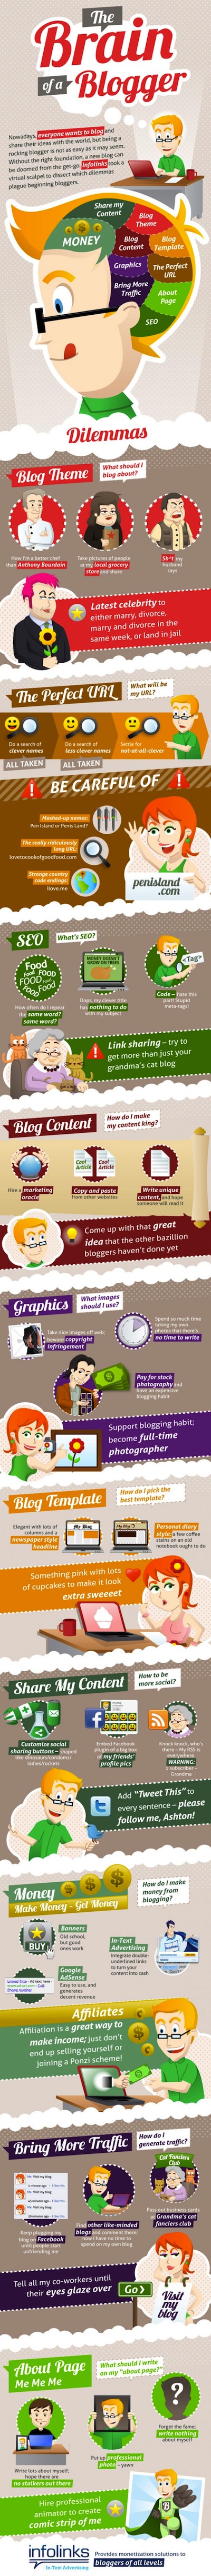 Infographie : Le cerveau d'un blogueur